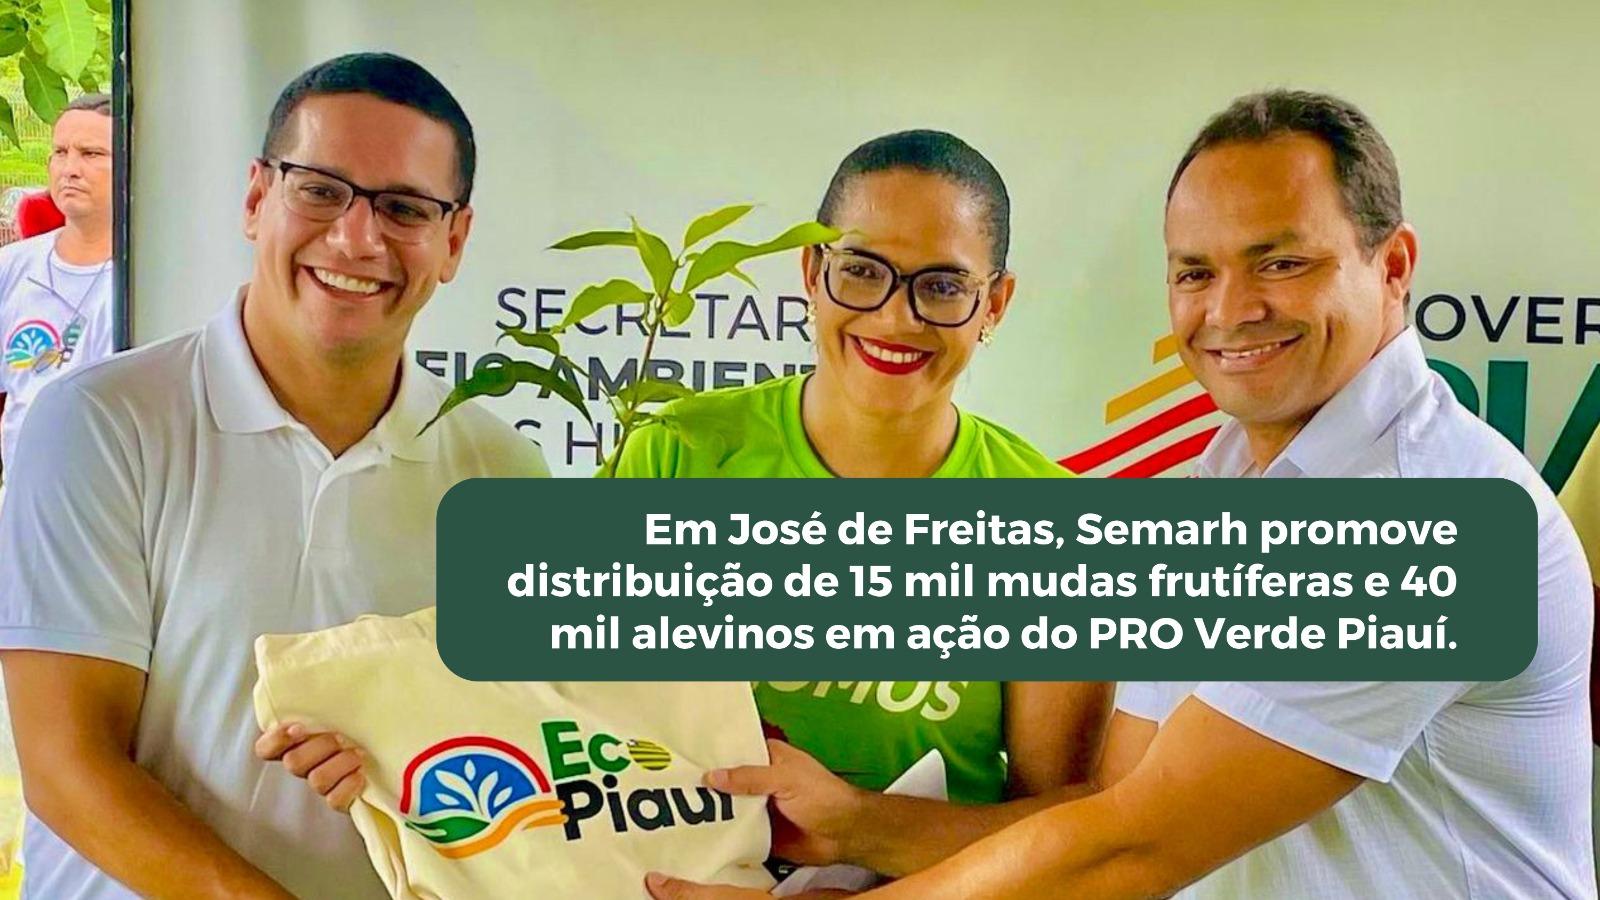 Em José de Freitas, Semarh promove distribuição de 15 mil mudas frutíferas e 40 mil alevinos em ação do PRO Verde Piauí.